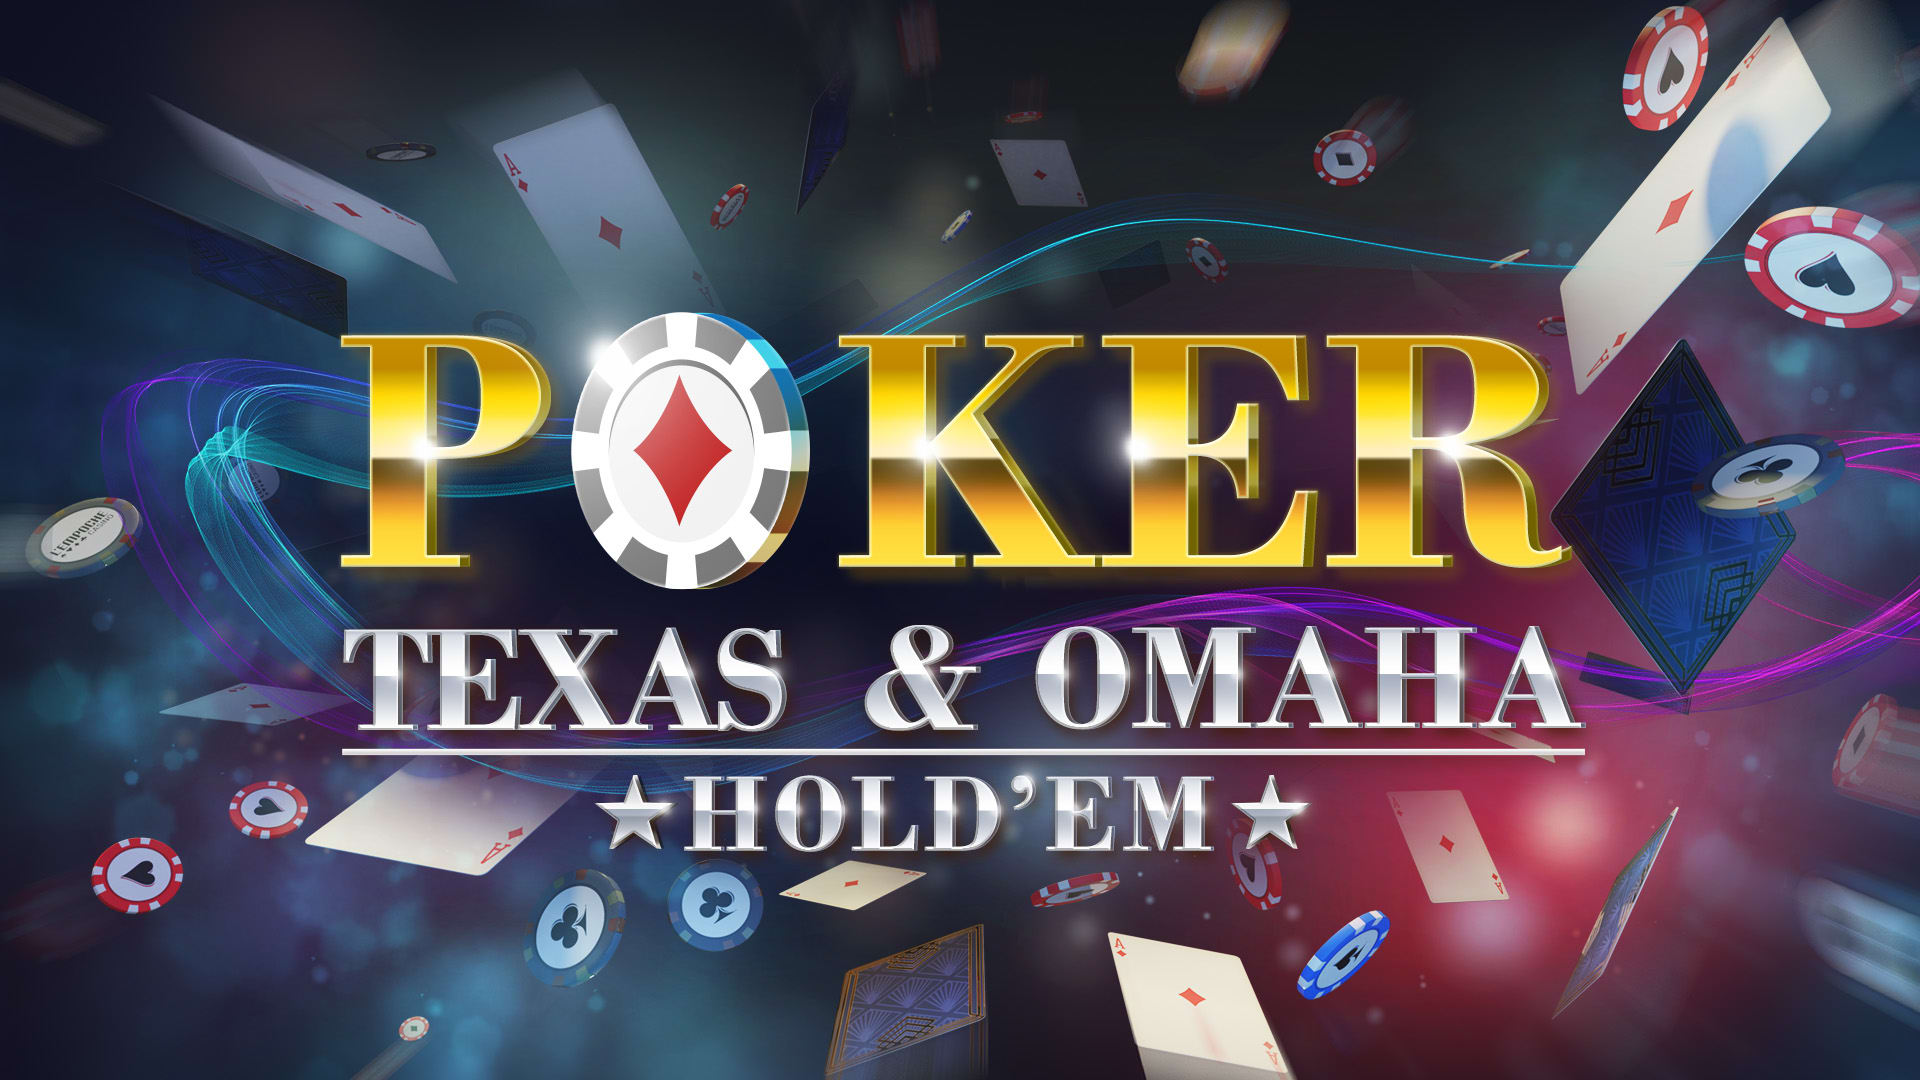 Poker - Texas & Omaha Hold'em